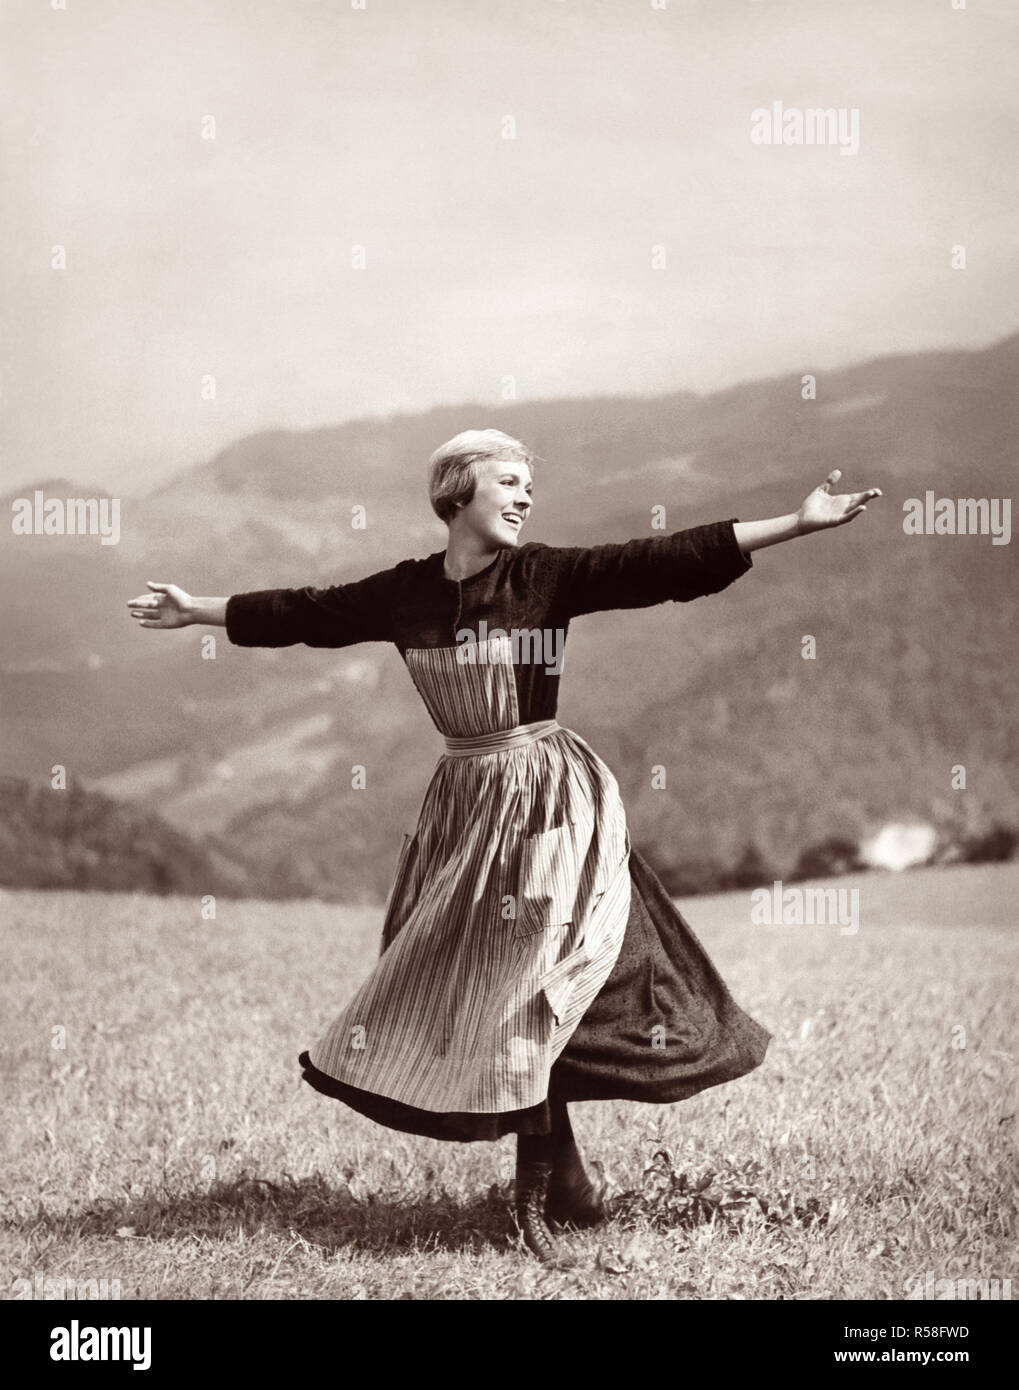 Julie Andrews twirling und singen auf einer Bergspitze Wiese in den Academy Award 1965 ausgezeichnete Film, der Klang der Musik. Stockfoto